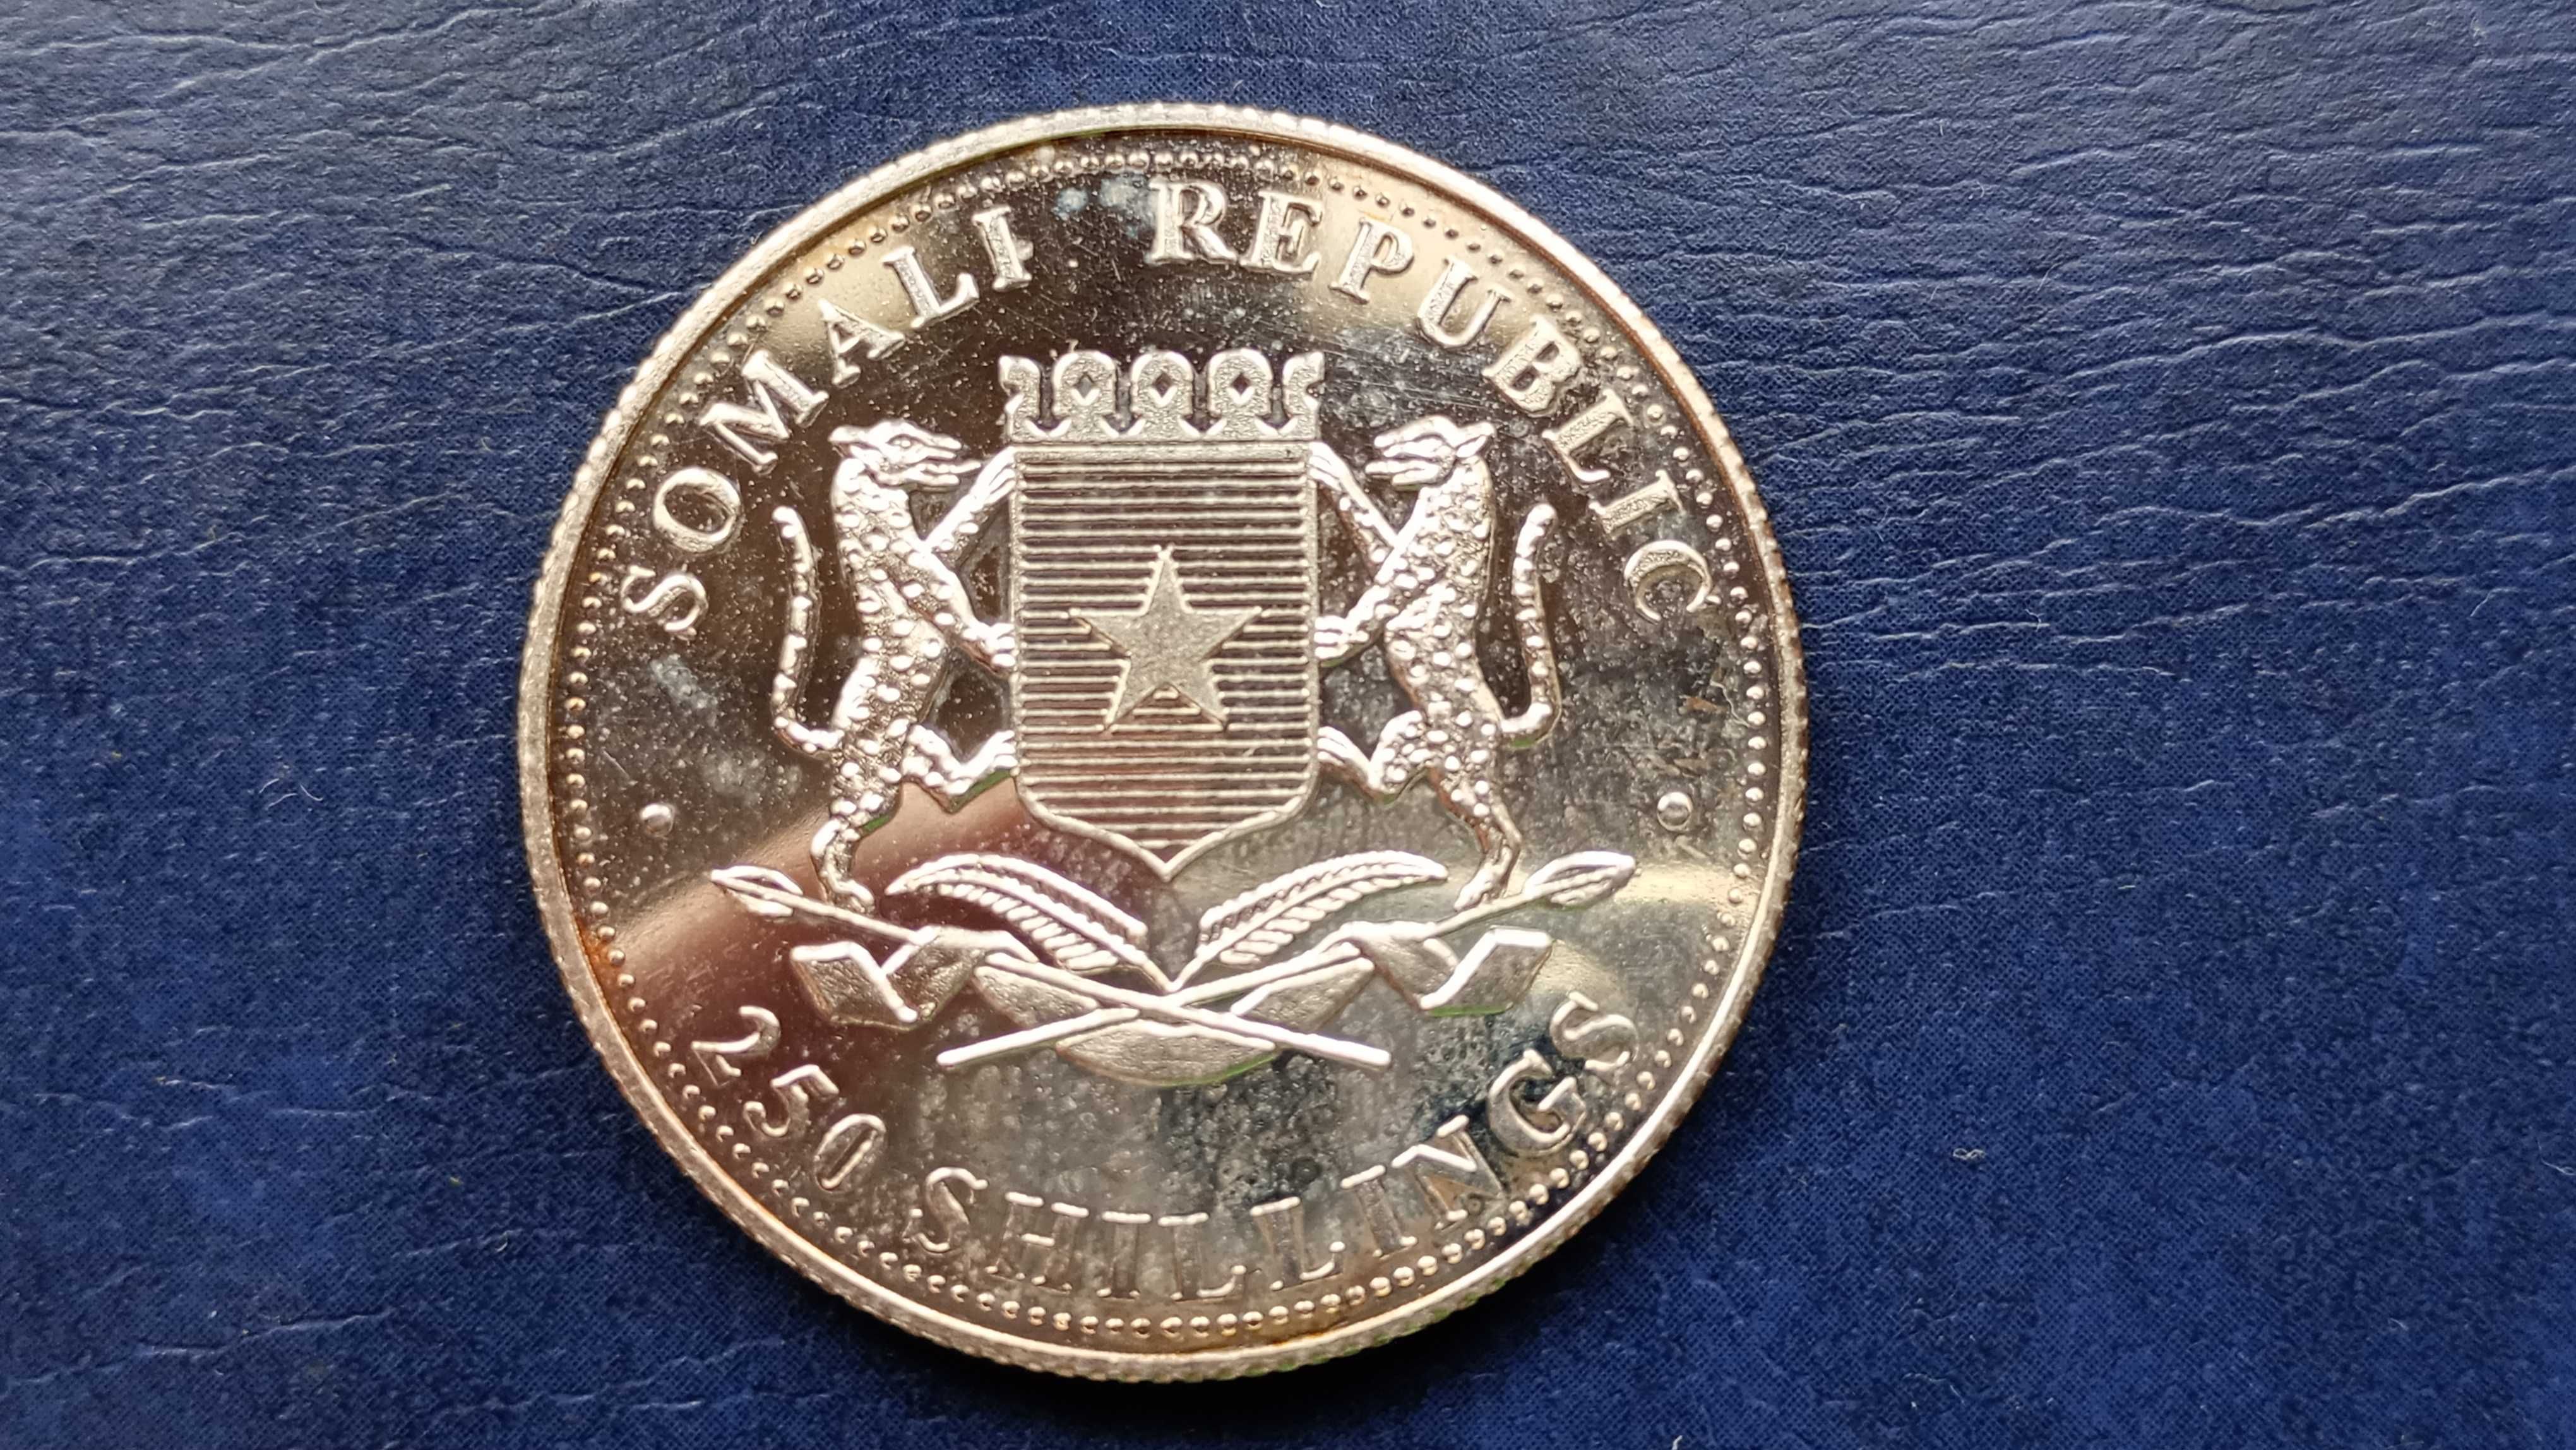 Stare monety 250 szyling 2005 Somalia posrebrzana